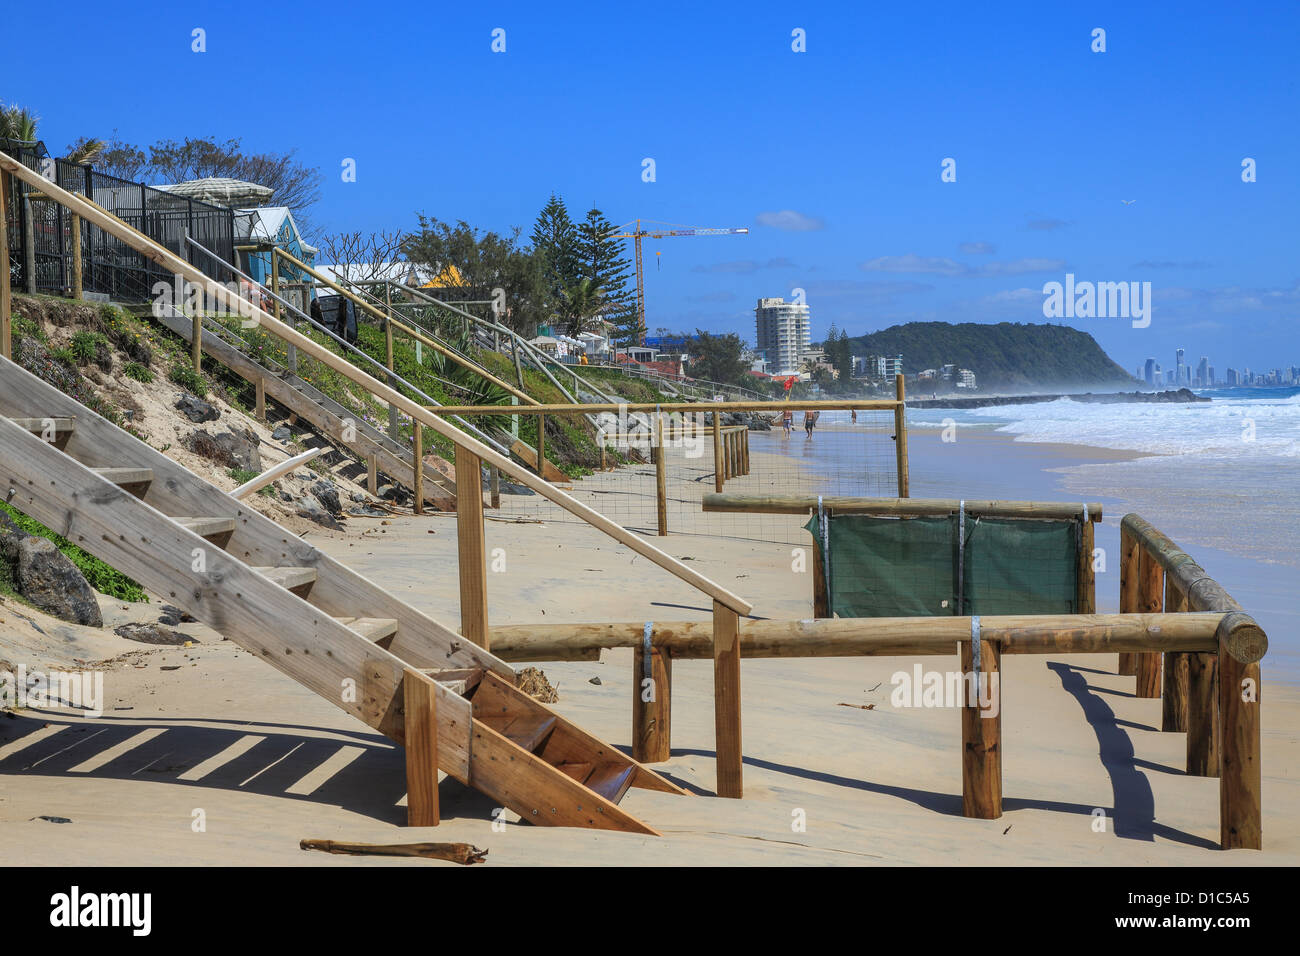 Il riscaldamento globale combinata con alta marea e tempesta provoca rigonfiamento in alto mare di erodere albergo sul fronte spiaggia. Foto Stock